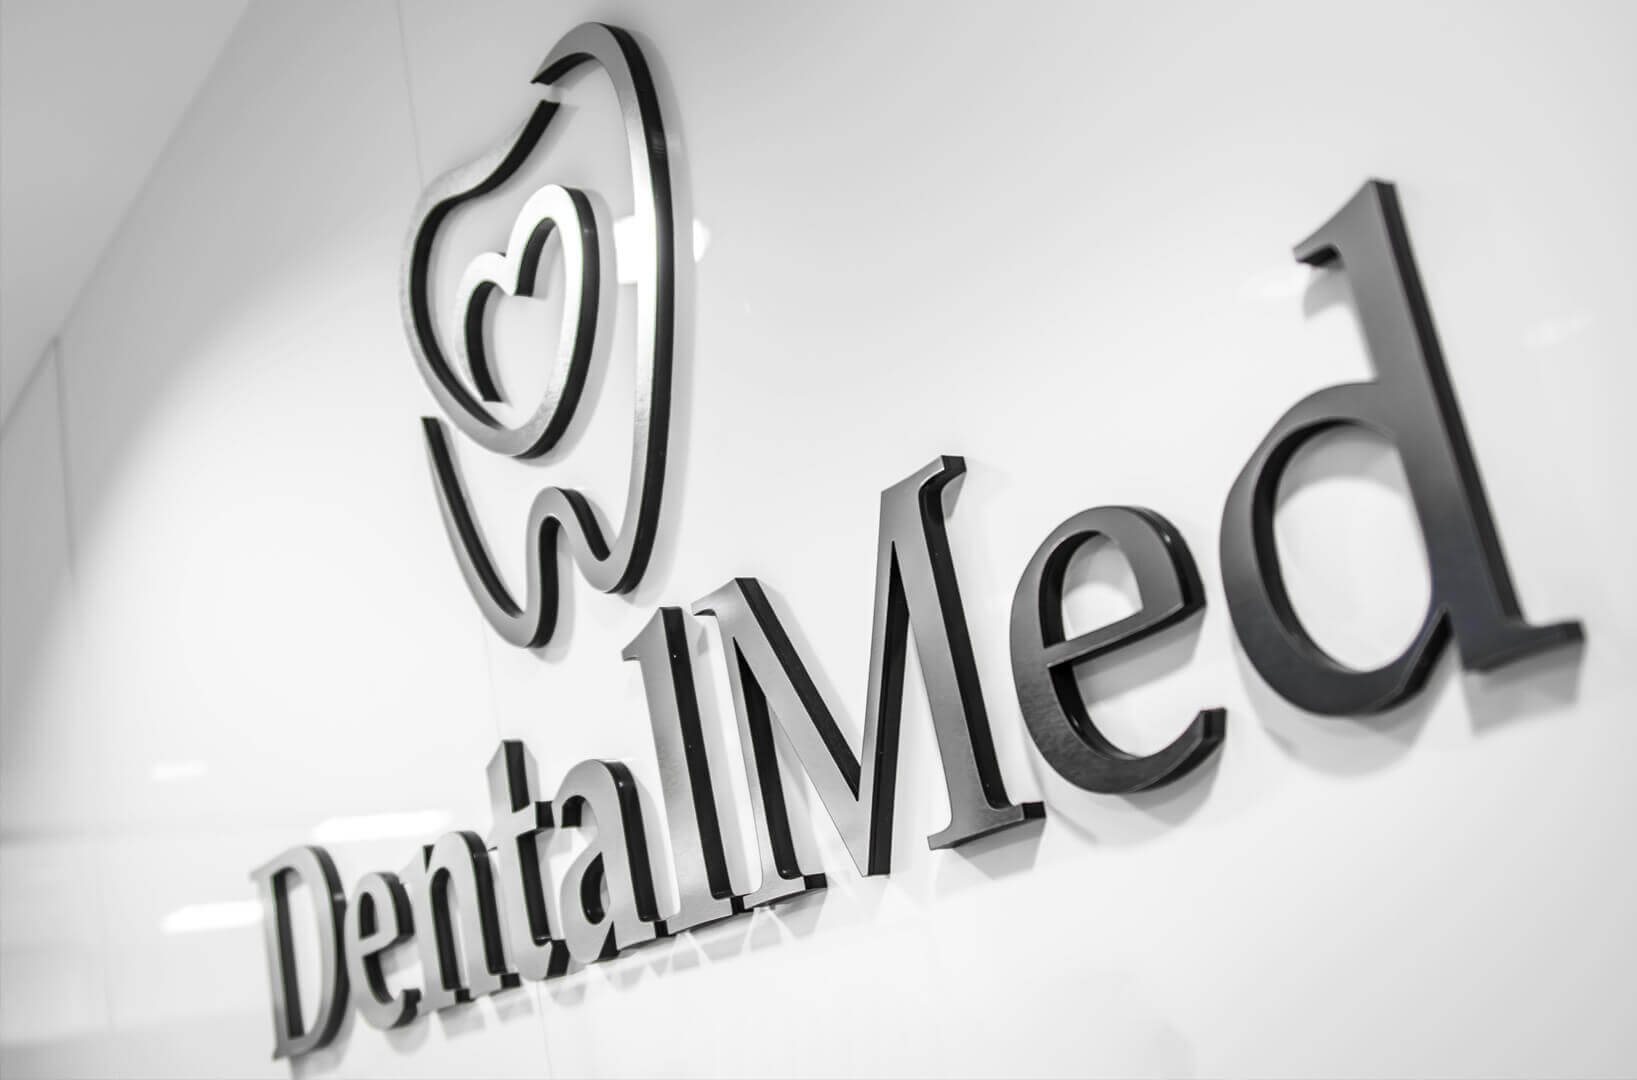 DentalMed - DentalMed - logo e lettere 3D in plexiglass posizionati accanto alla reception